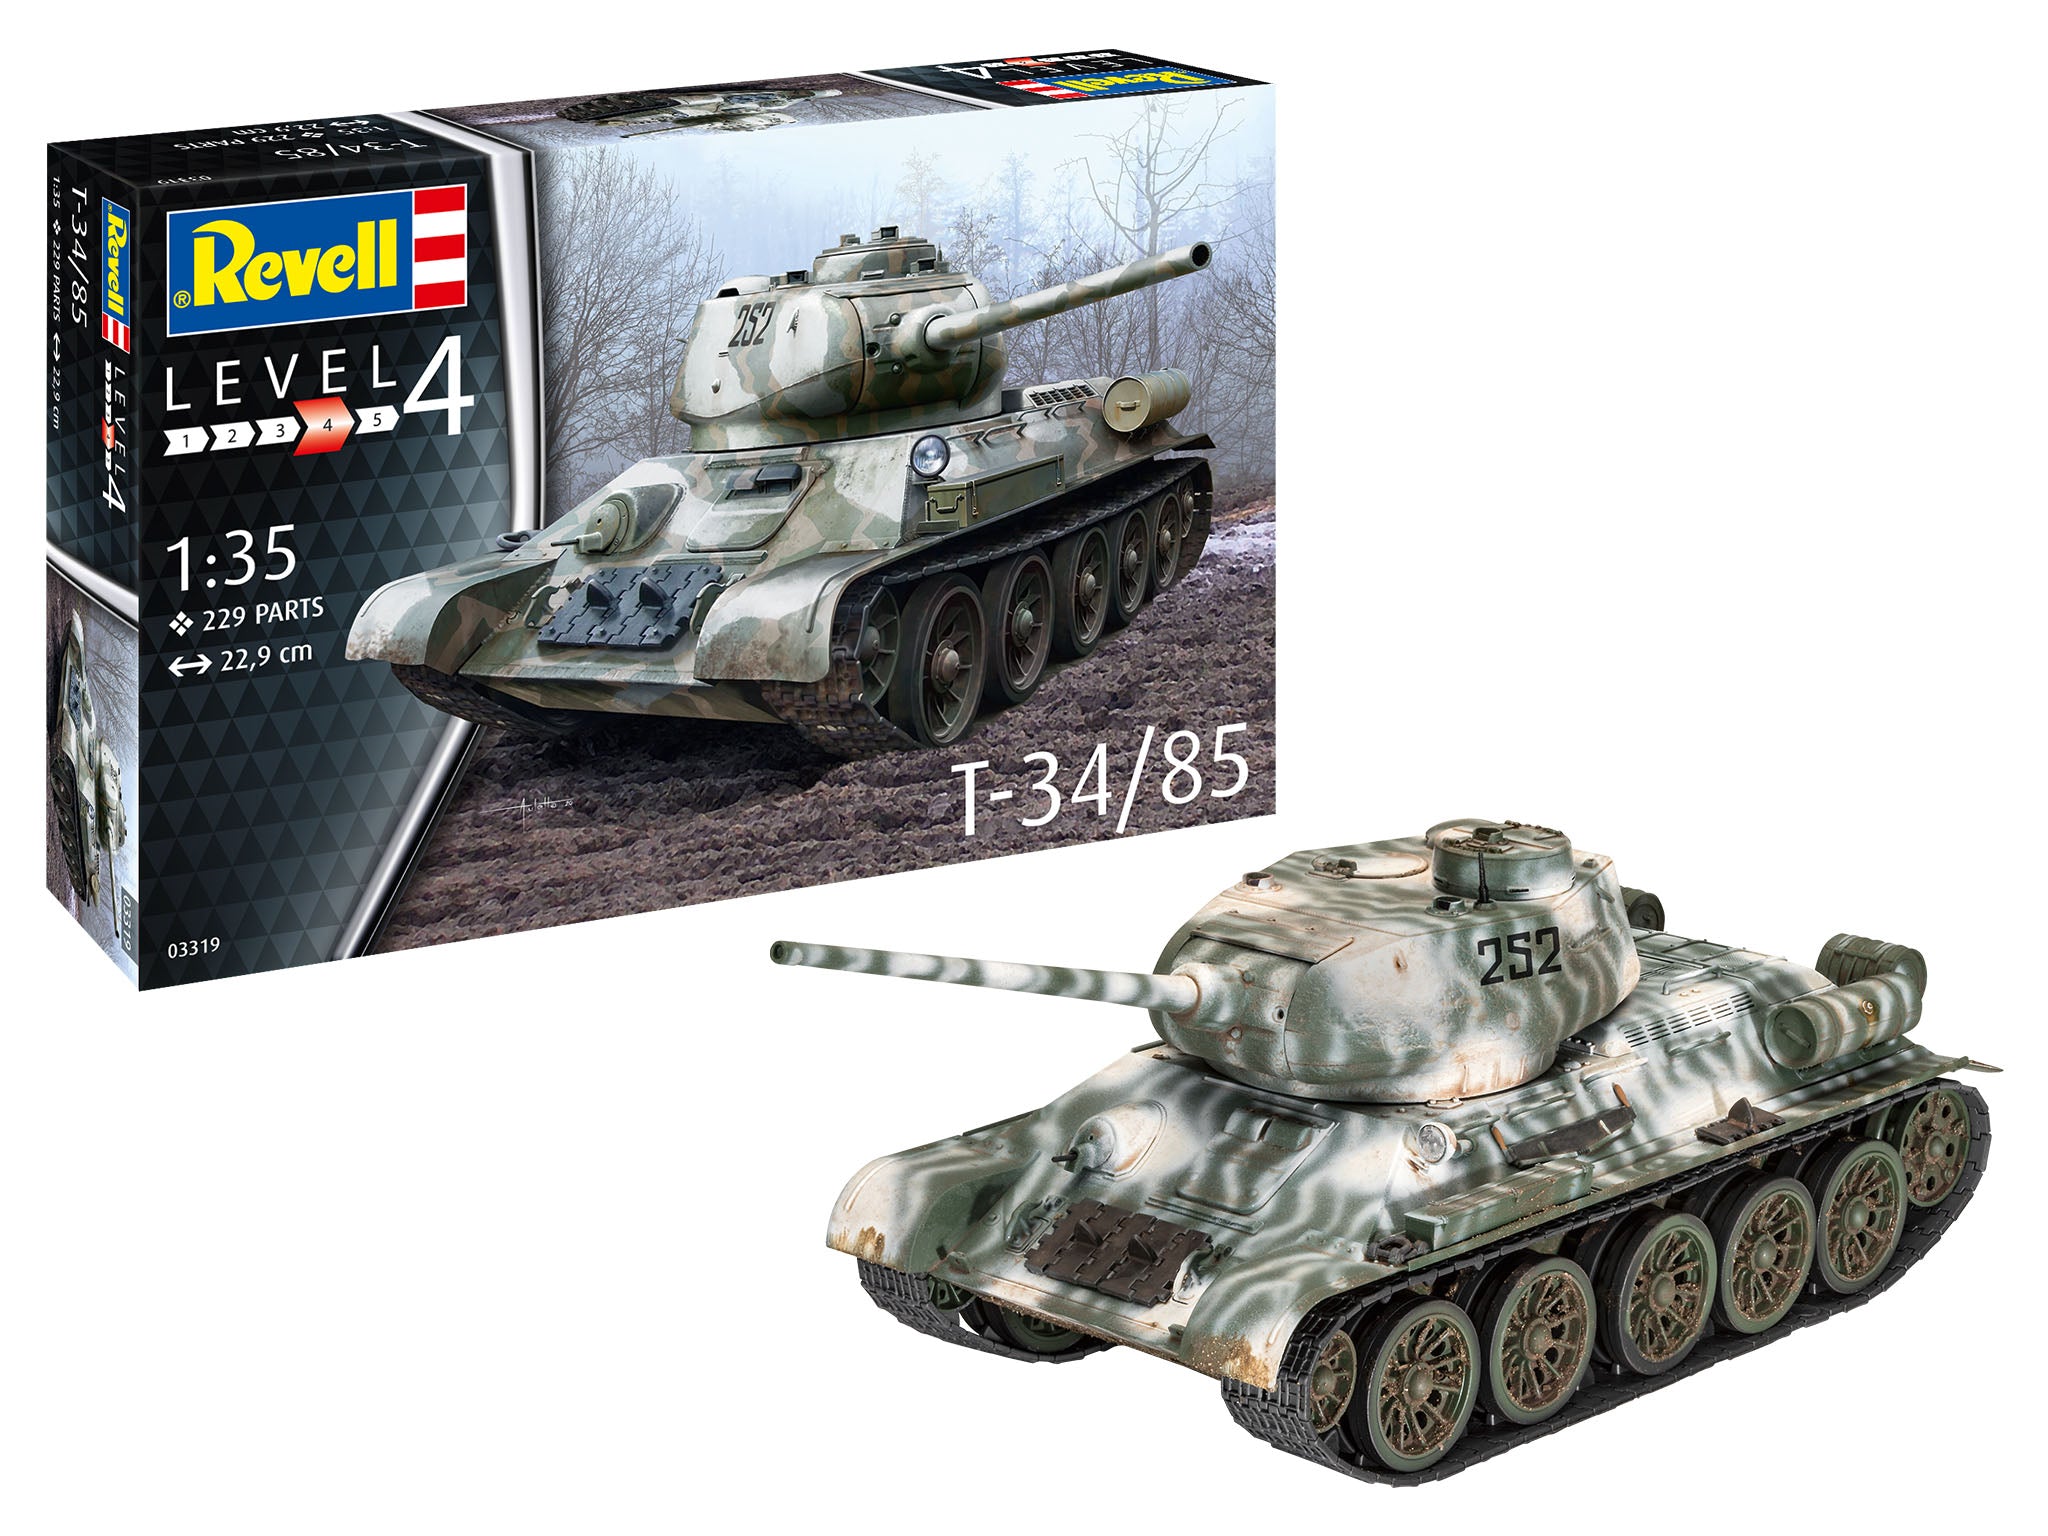 Revell T-34/85 1:35 Tank Model Building Kit